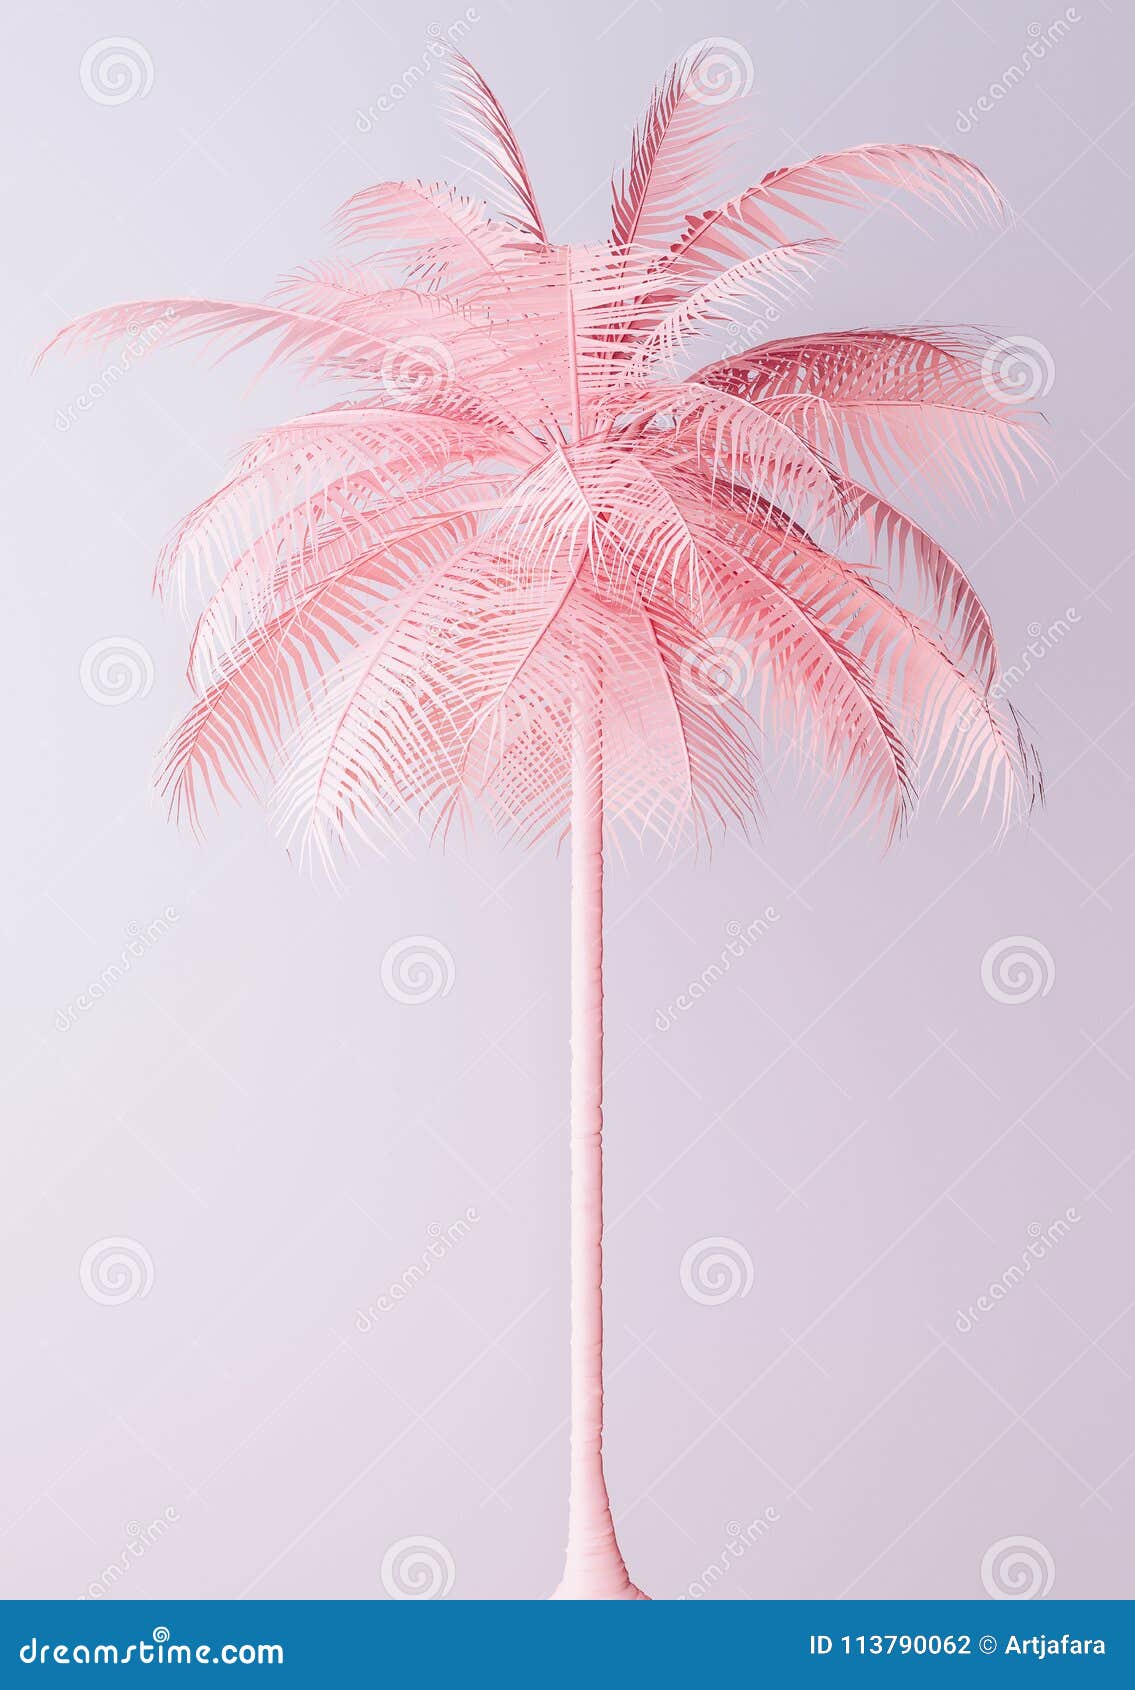 unusual pastel pink palm backgroud